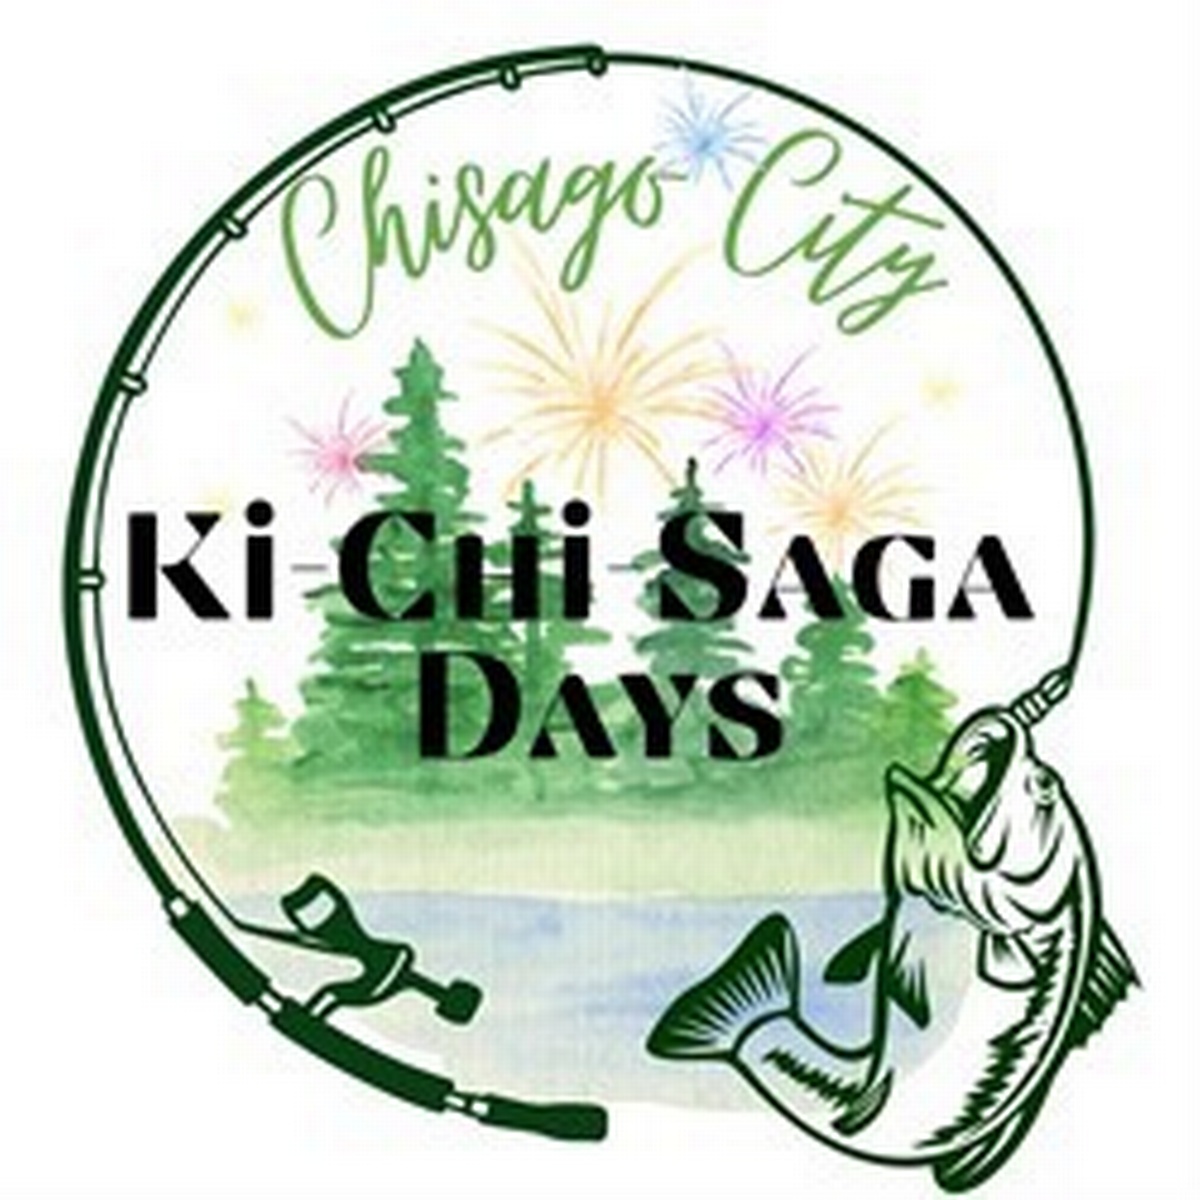 KiChiSaga Days Celebration Aug 17, 2023 to Aug 20, 2023